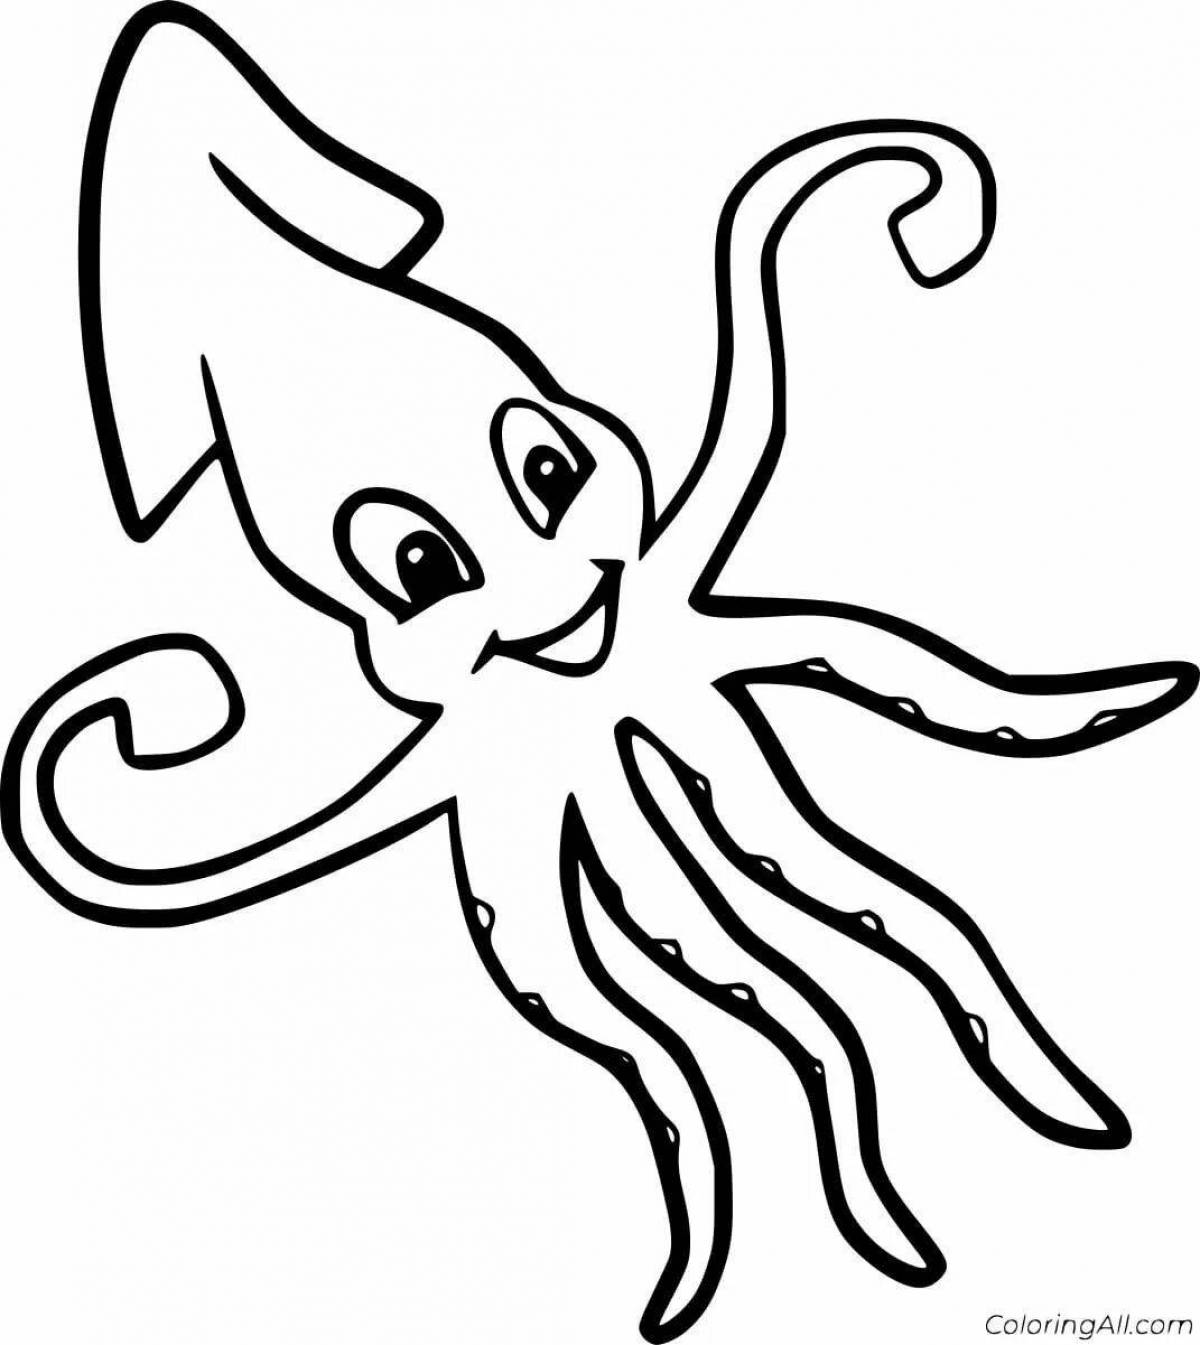 Fun squid coloring book